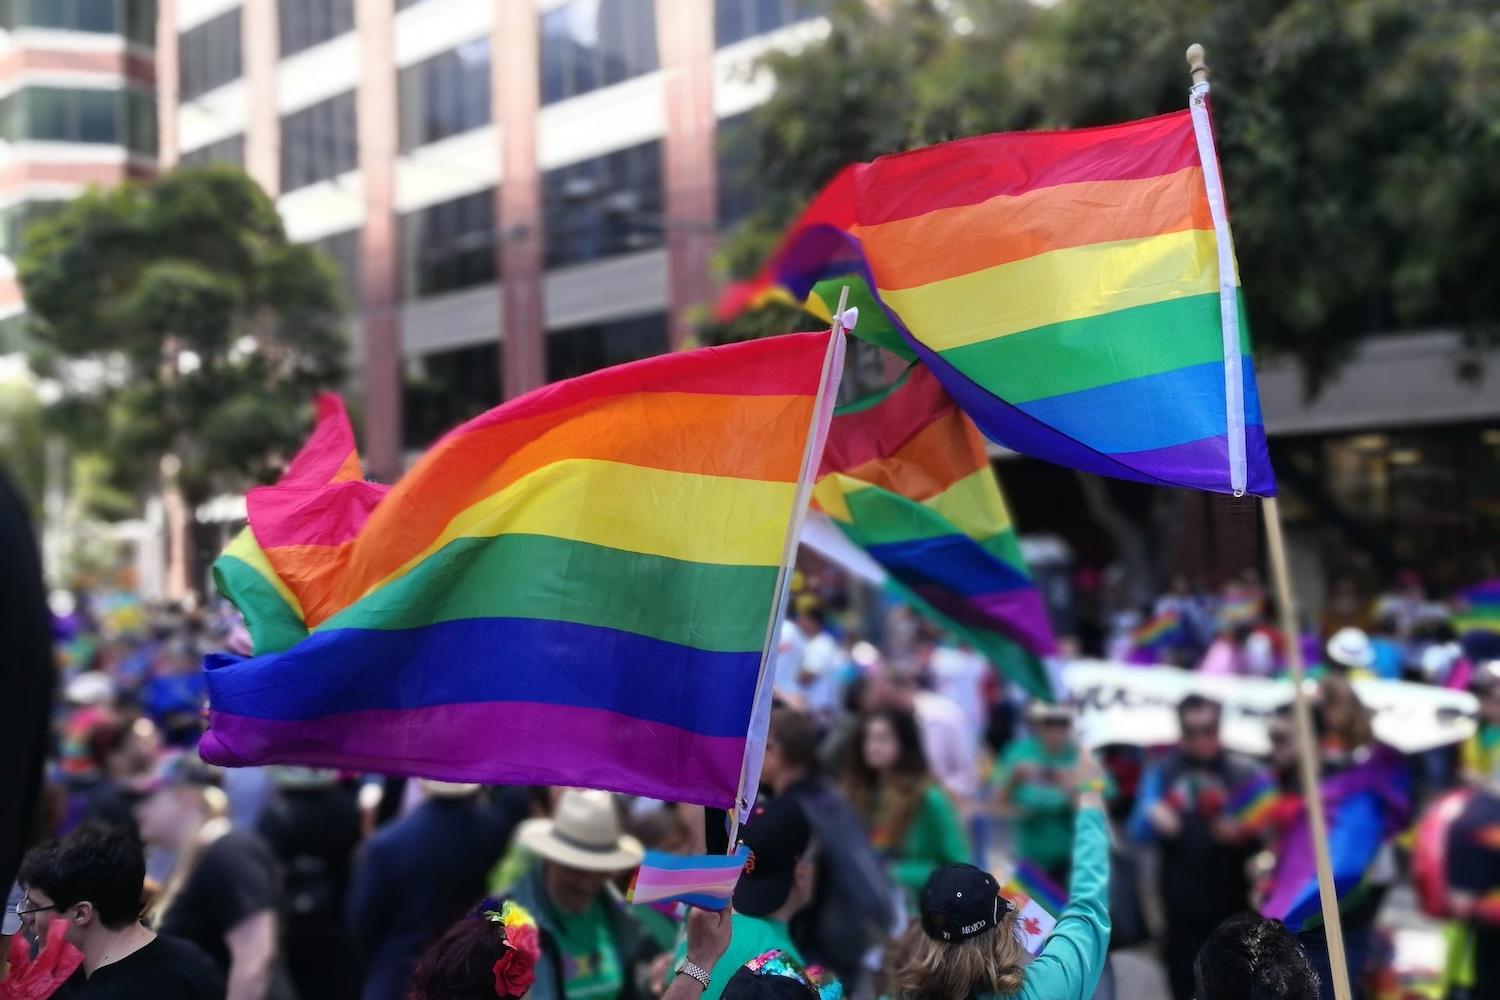 LGBTQ pride flags at parade